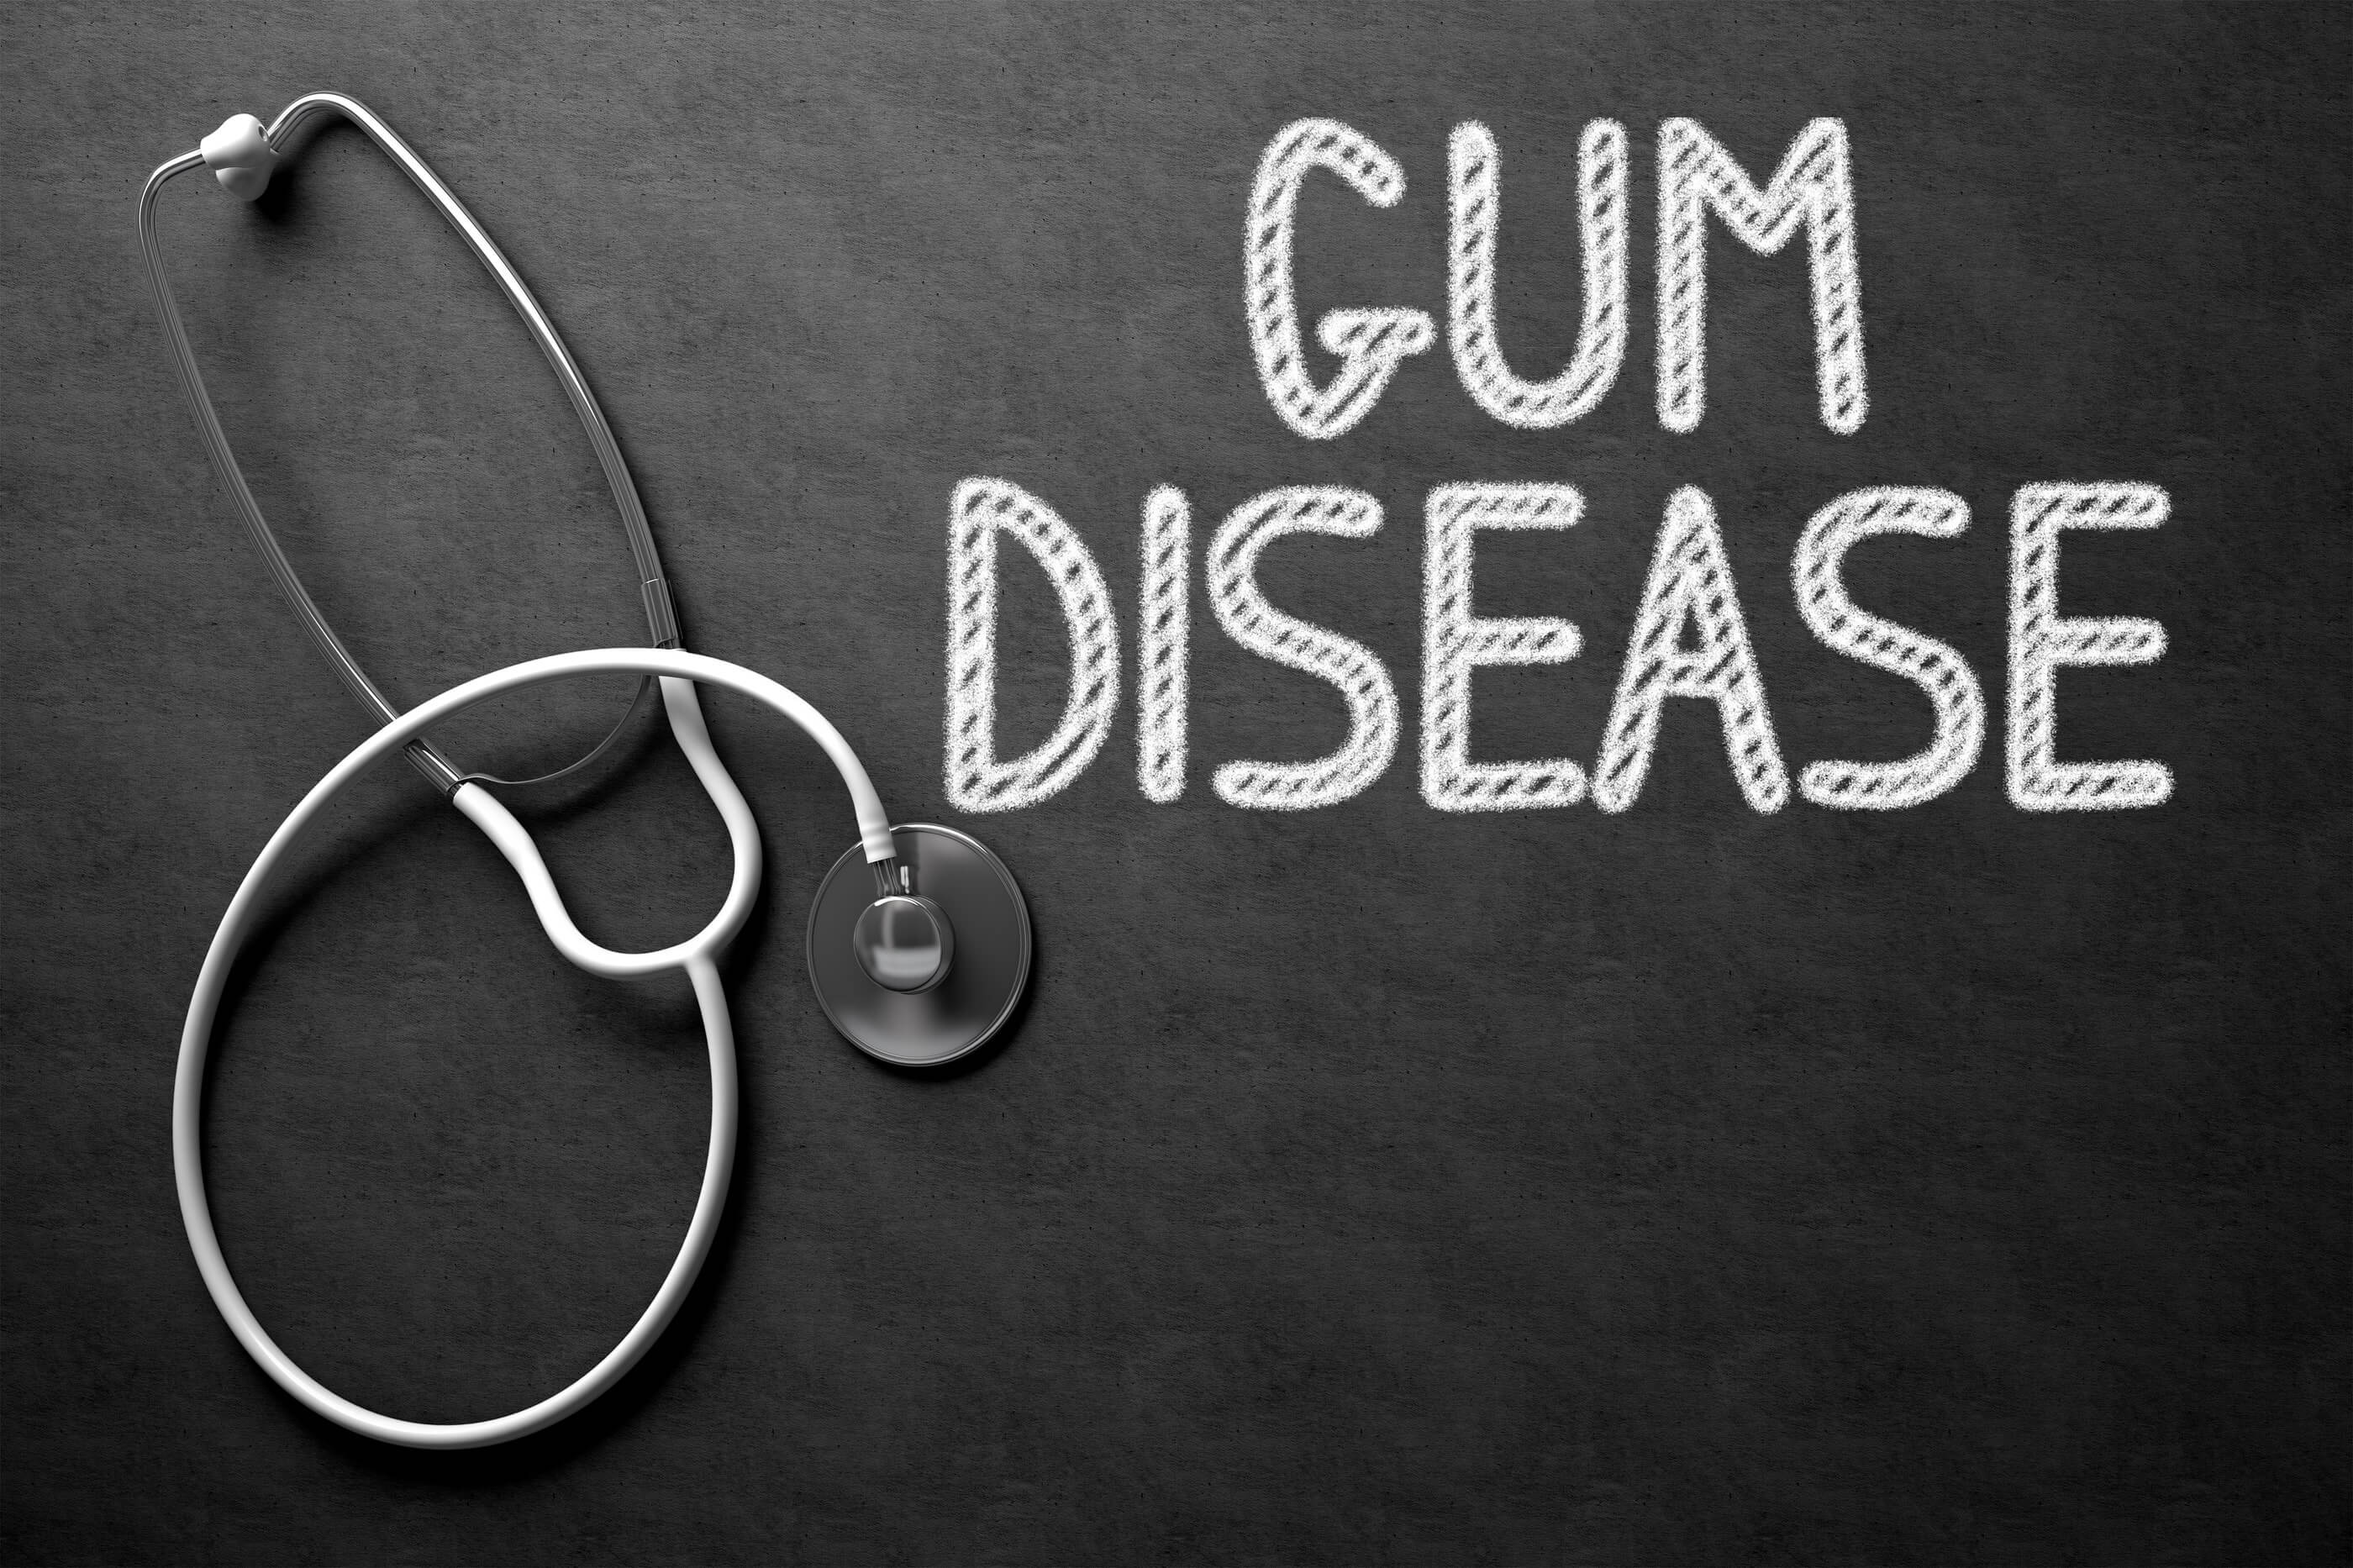 Gum Disease and Gingivitis